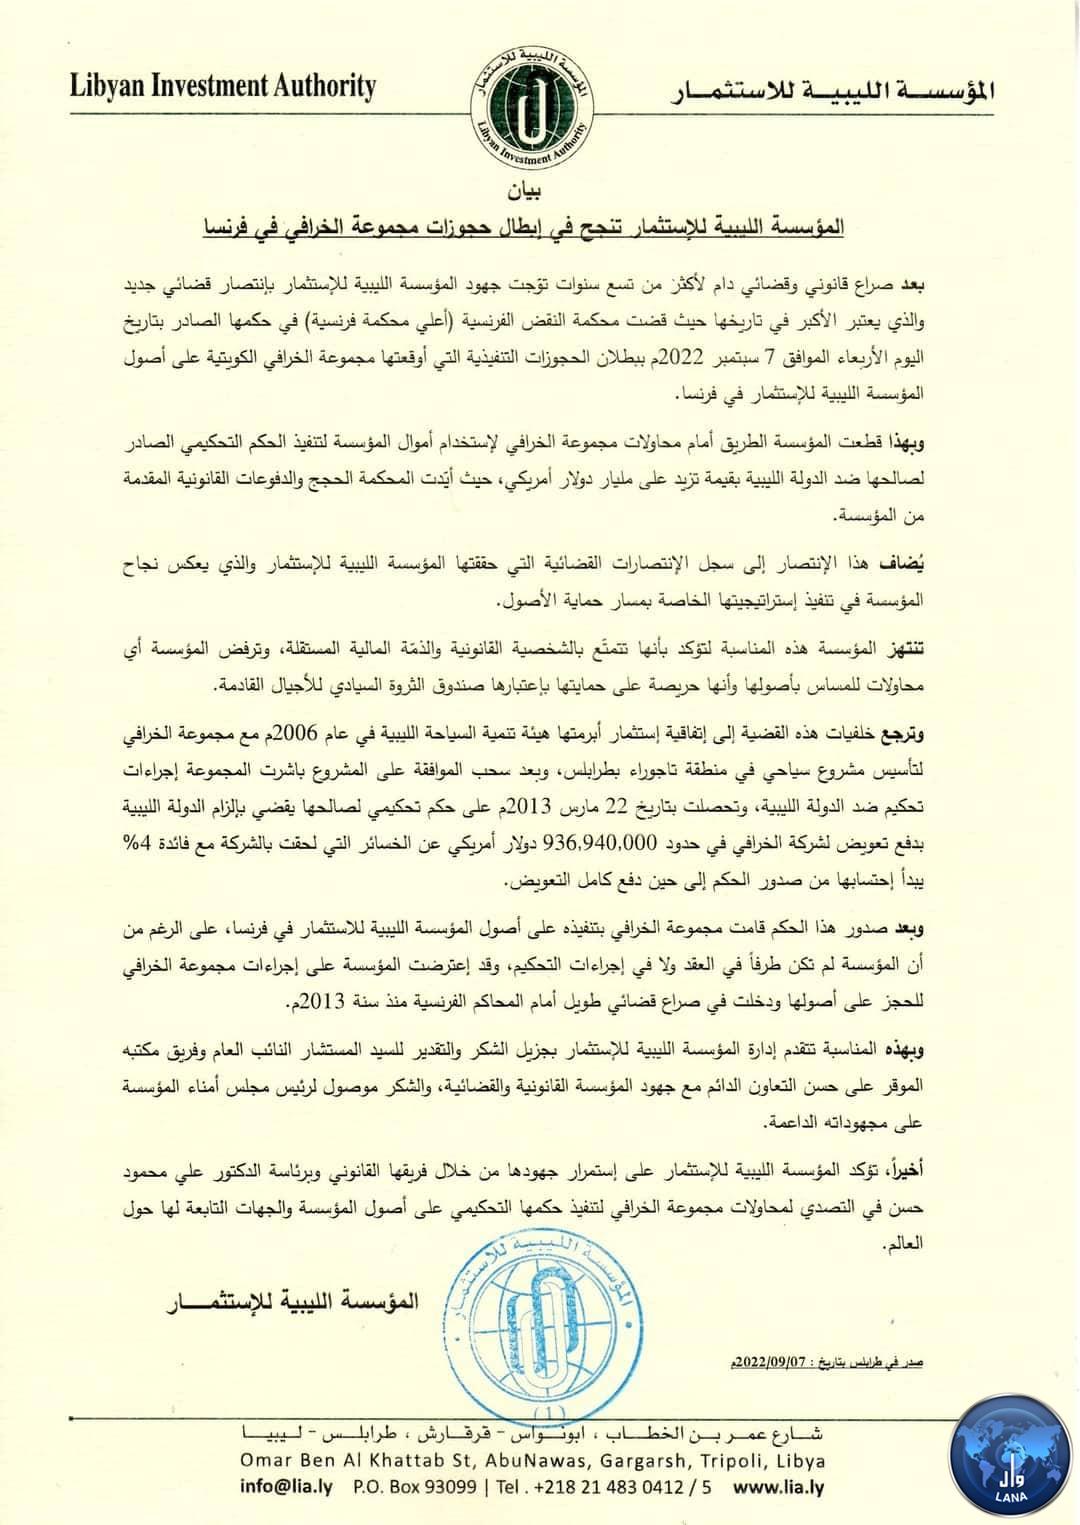 L'Institution  Libyenne Investissement a réussi à invalider les réserves du groupe Al-Khorafi en France.